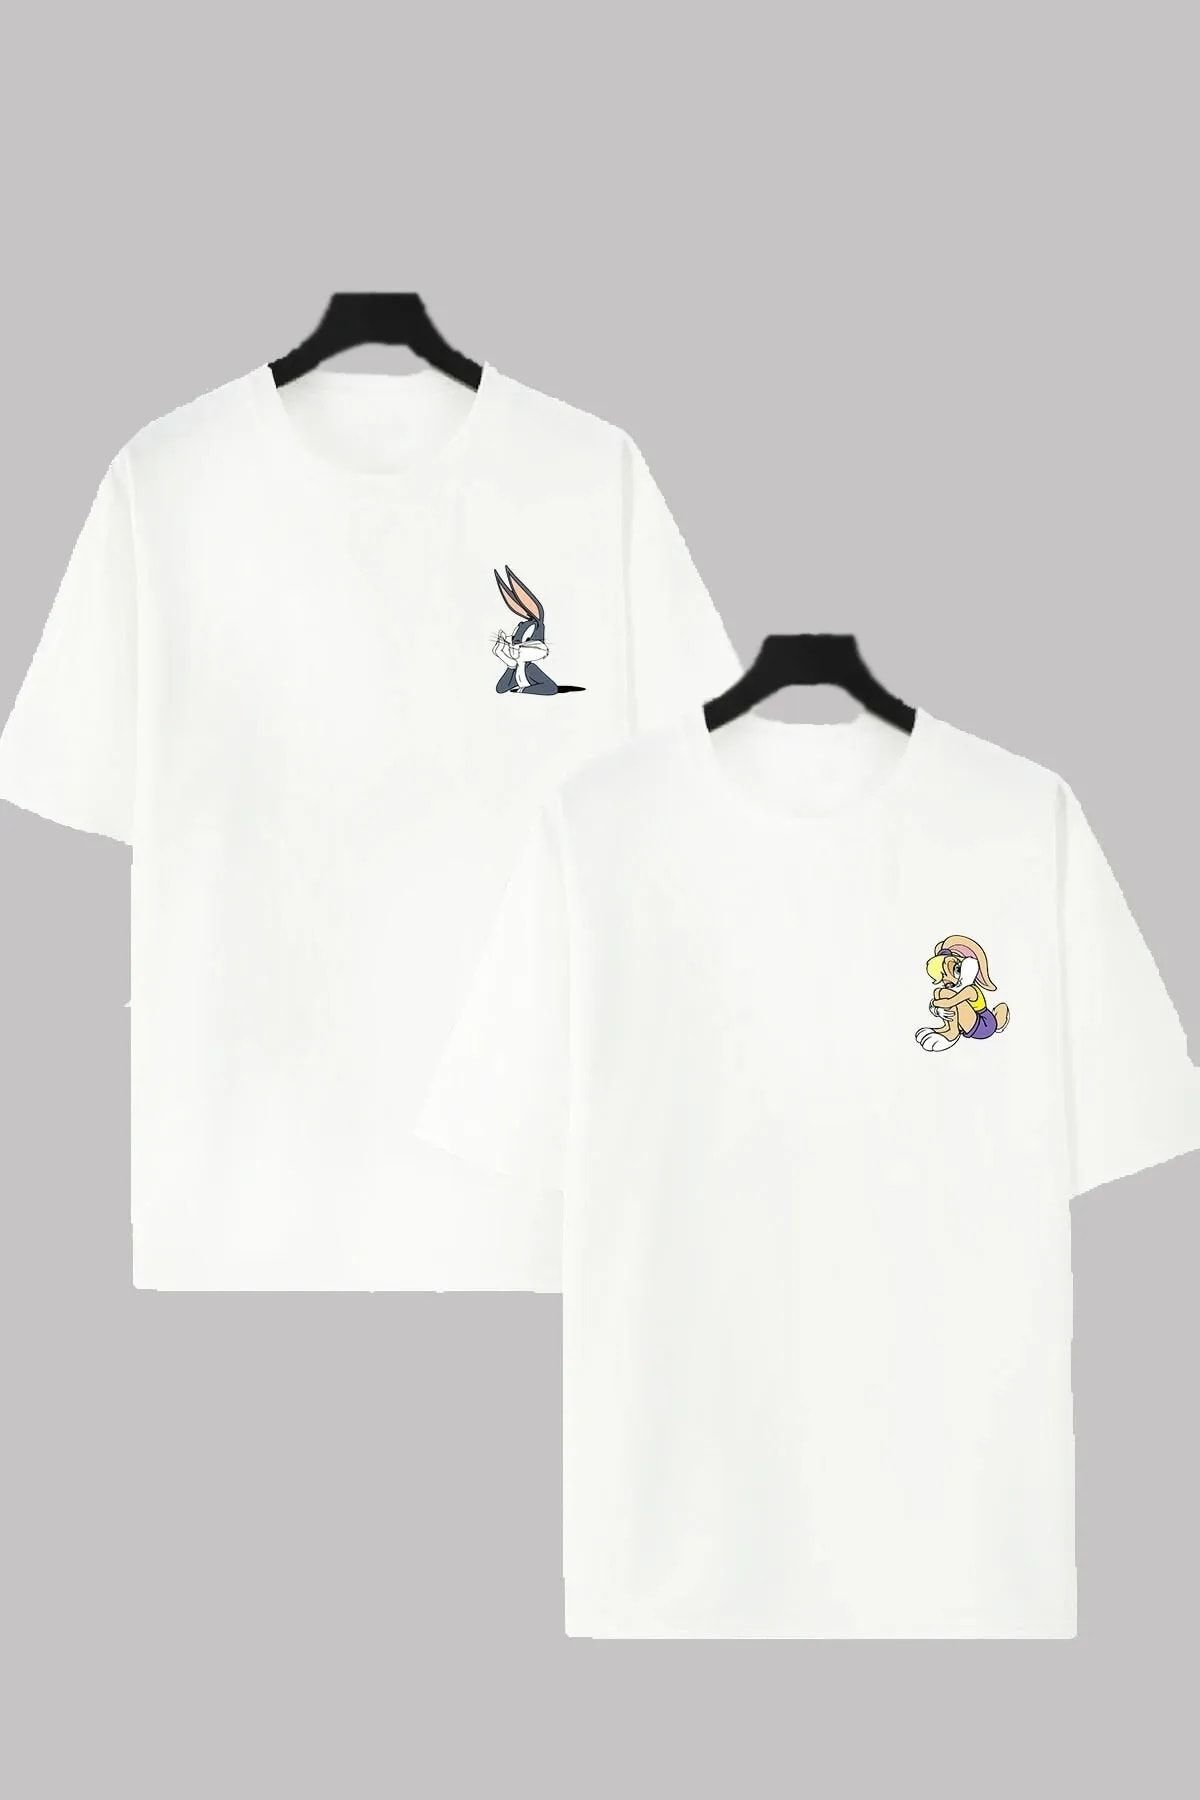 EgeModa Bugs Bunny Ve Lola Bunny Baskılı Sevgili Kombini Oversize Unisex T-shirt 2 Ürün